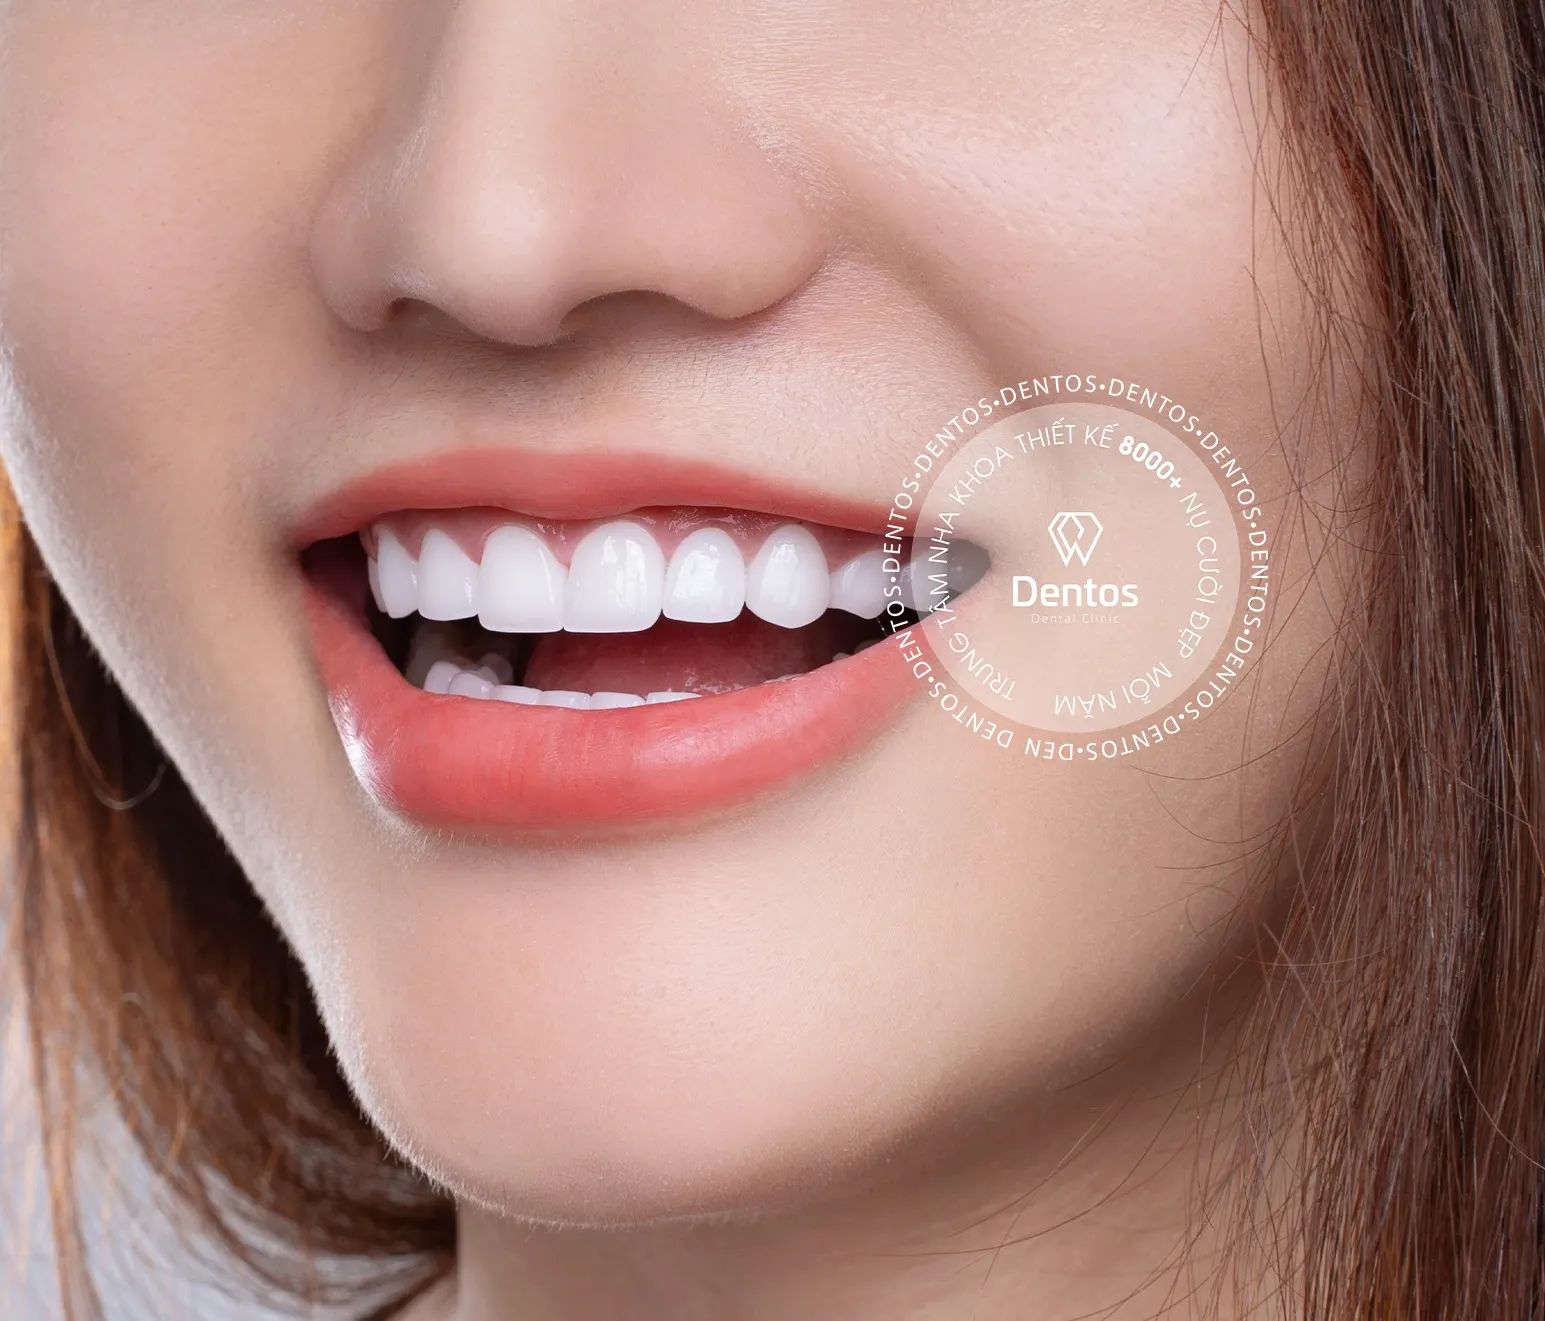 Bảng giá răng sứ mới nhất hiện nay - Có nên bọc răng sứ giá rẻ?